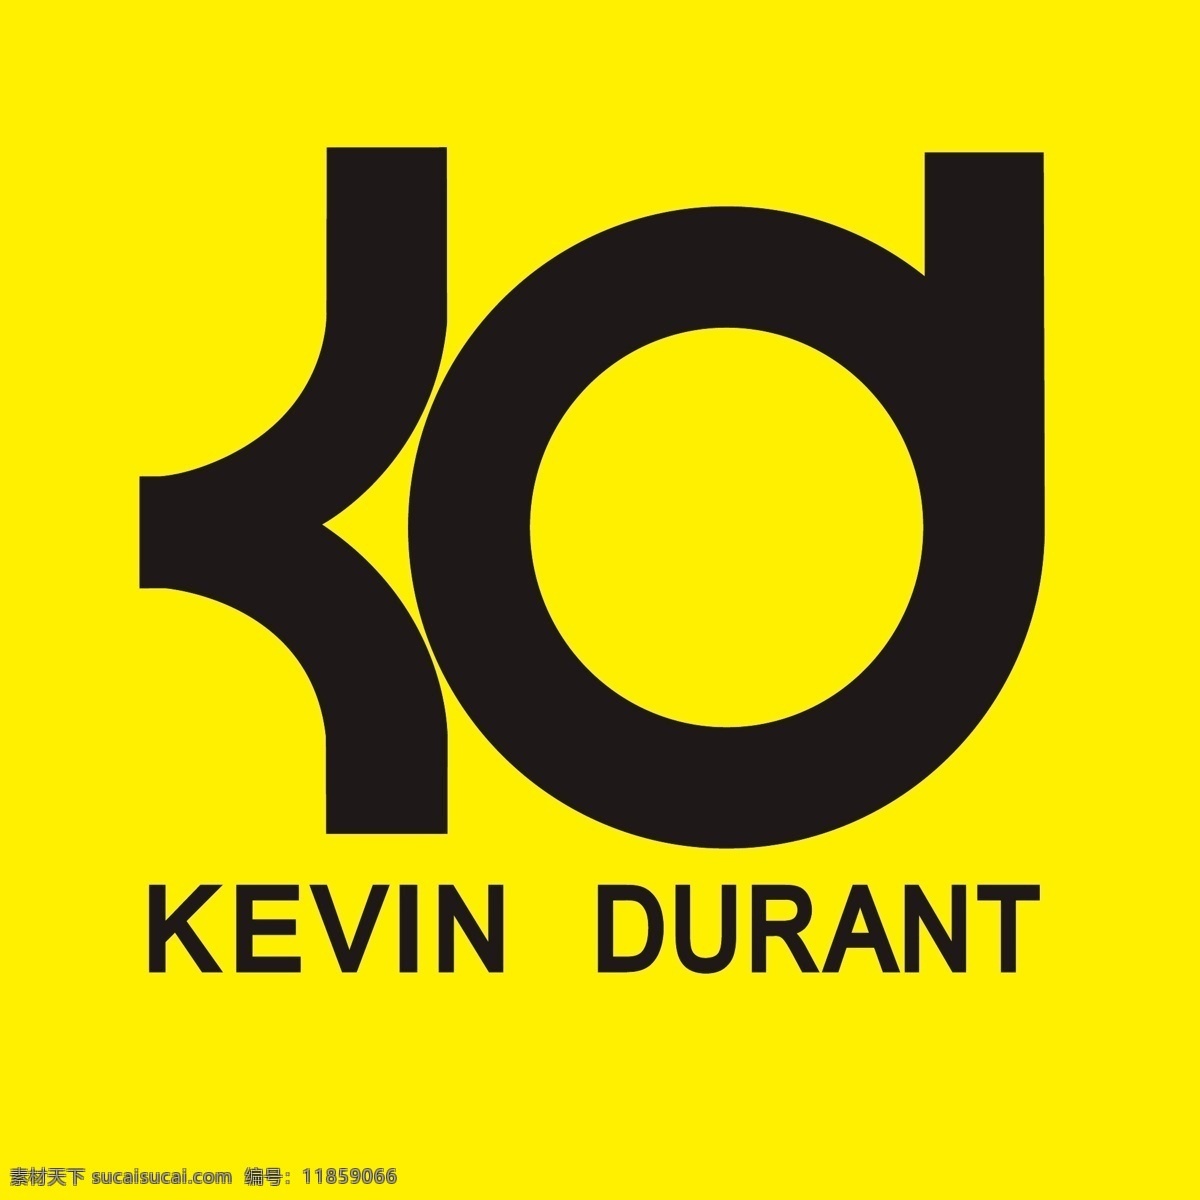 凯文杜兰特 杜兰特标志 kevin durant 杜兰特 logo 标志图标 其他图标